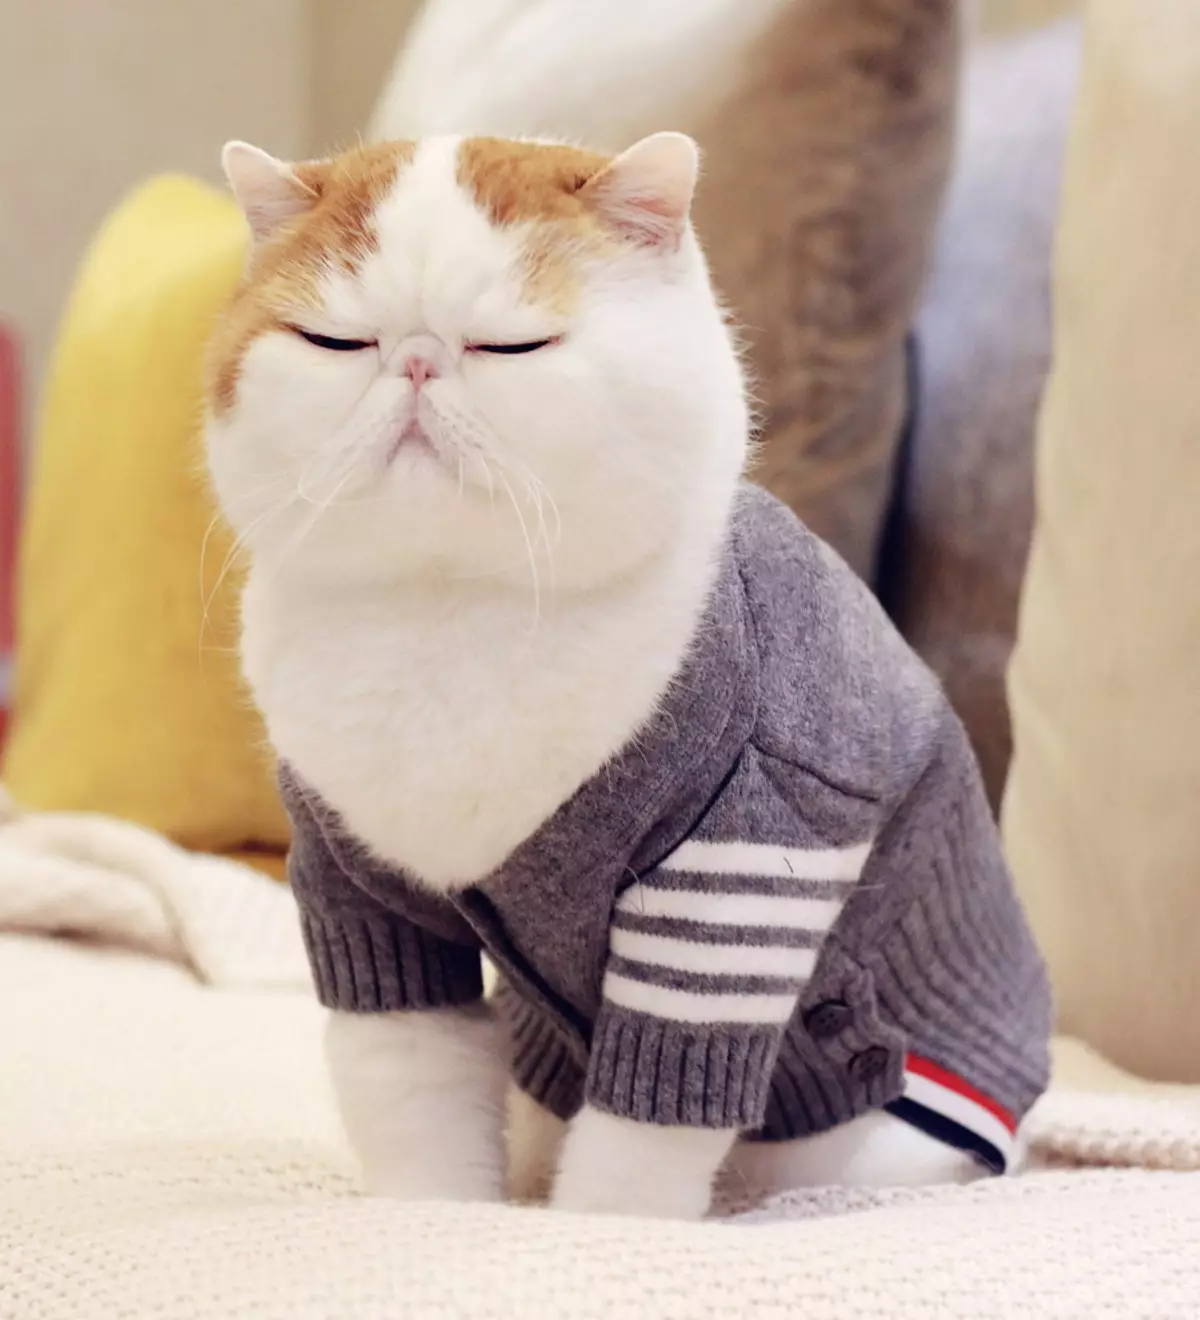 سنیپی بلیوں (24 فوٹو): اس نسل کی بلیوں کو کیوں مقبول بن گیا ہے؟ غیر ملکی جاپانی بلی کے مواد کی نوعیت اور خصوصیات کی وضاحت 22529_5